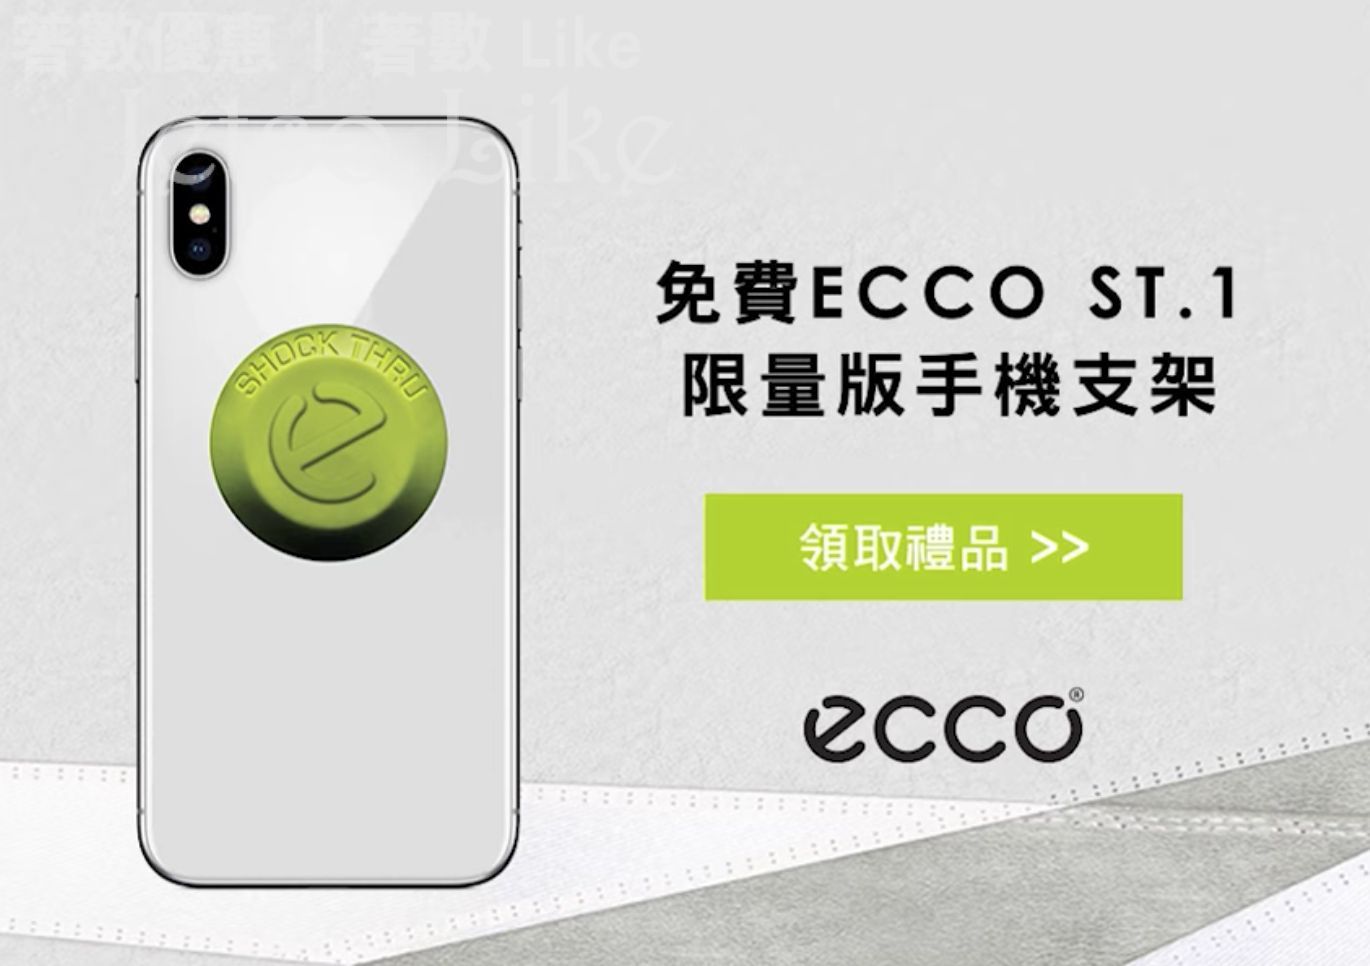 免費換領 ECCO 禮品及購物優惠